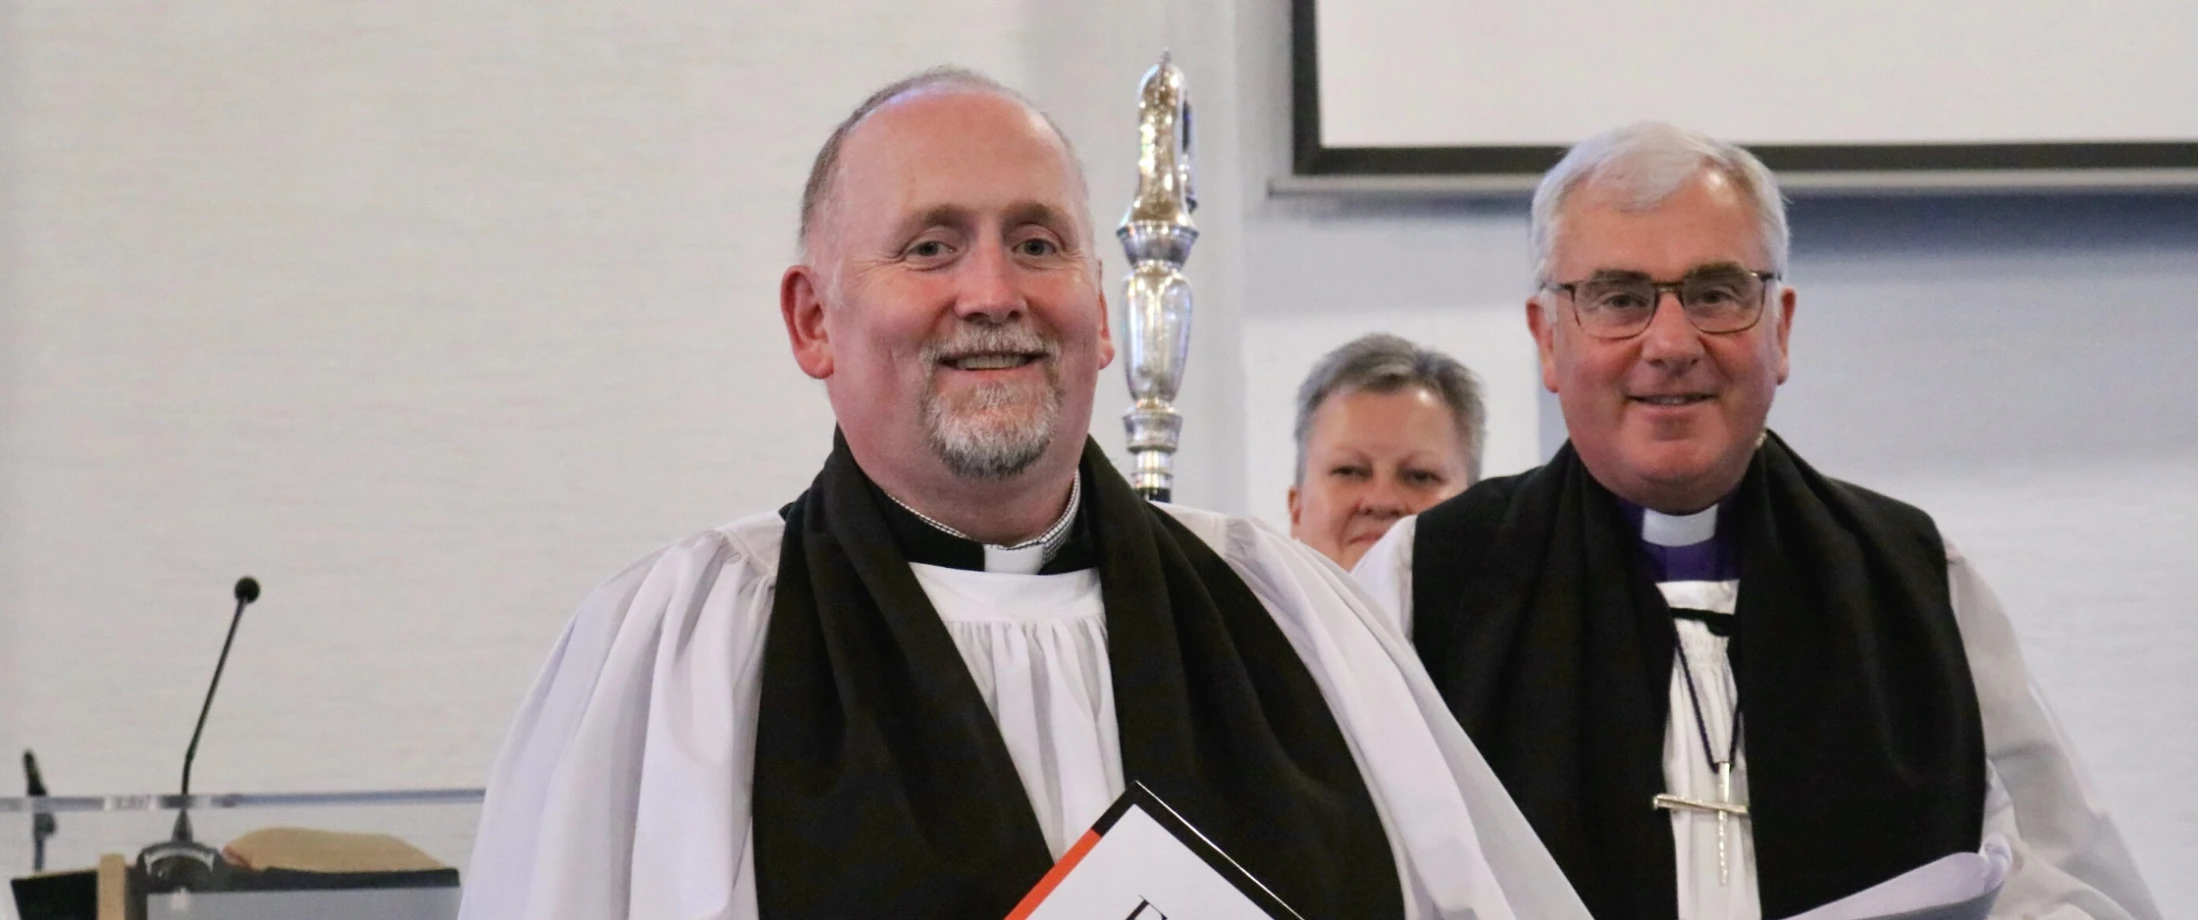 Revd James Cunningham is ordained presbyter (OLM)